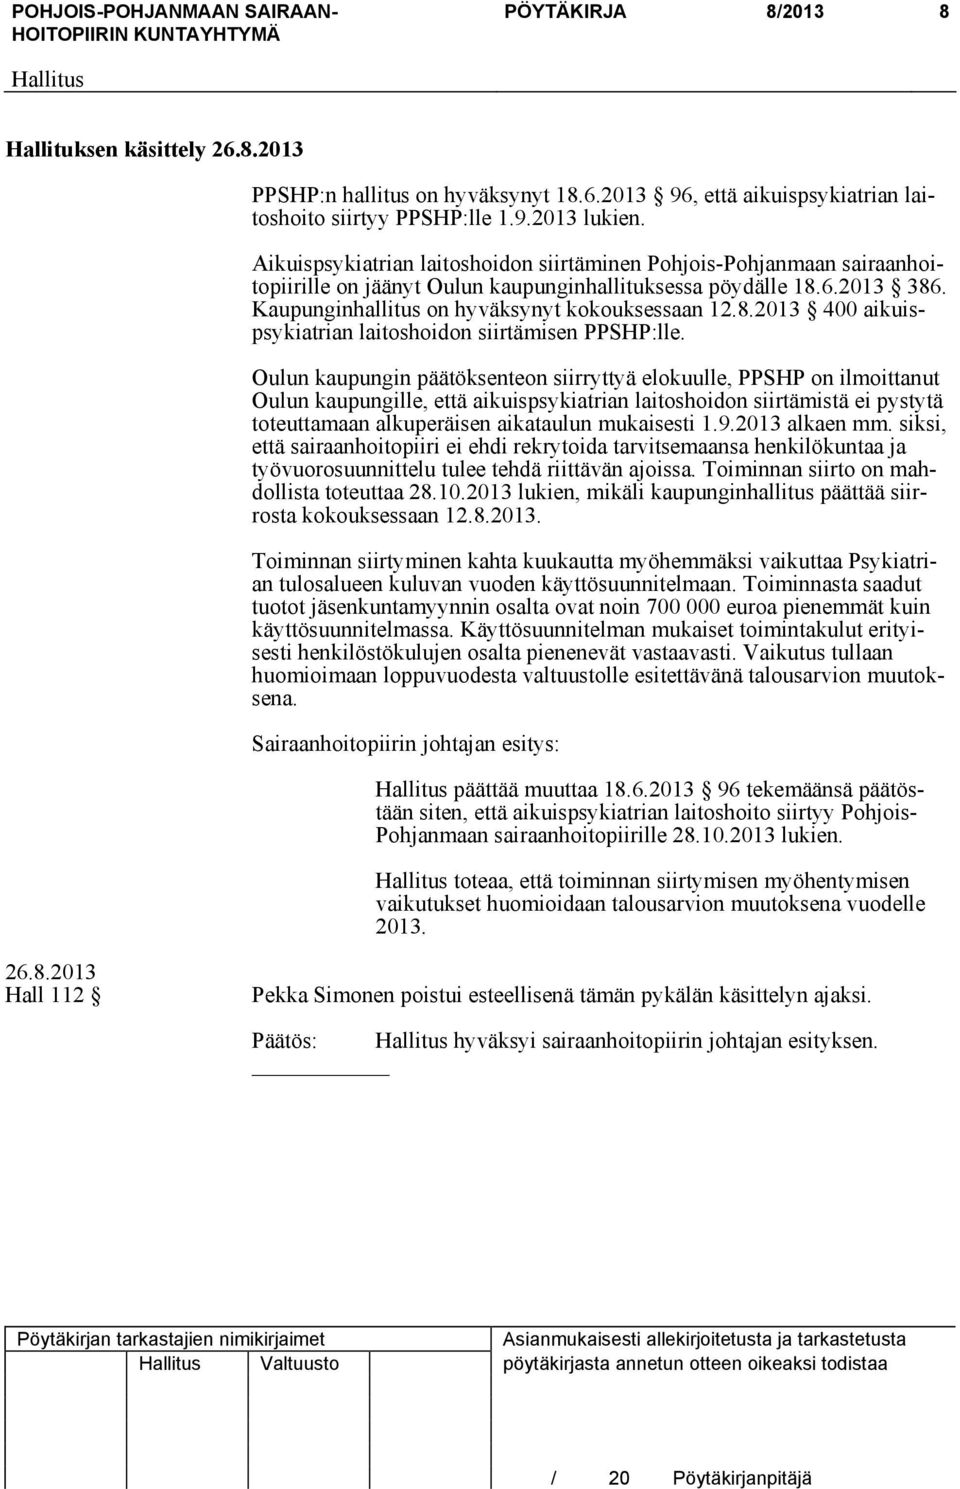 Oulun kaupungin päätöksenteon siirryttyä elokuulle, PPSHP on ilmoittanut Oulun kaupungille, että aikuispsykiatrian laitoshoidon siirtämistä ei pystytä toteuttamaan alkuperäisen aikataulun mukaisesti